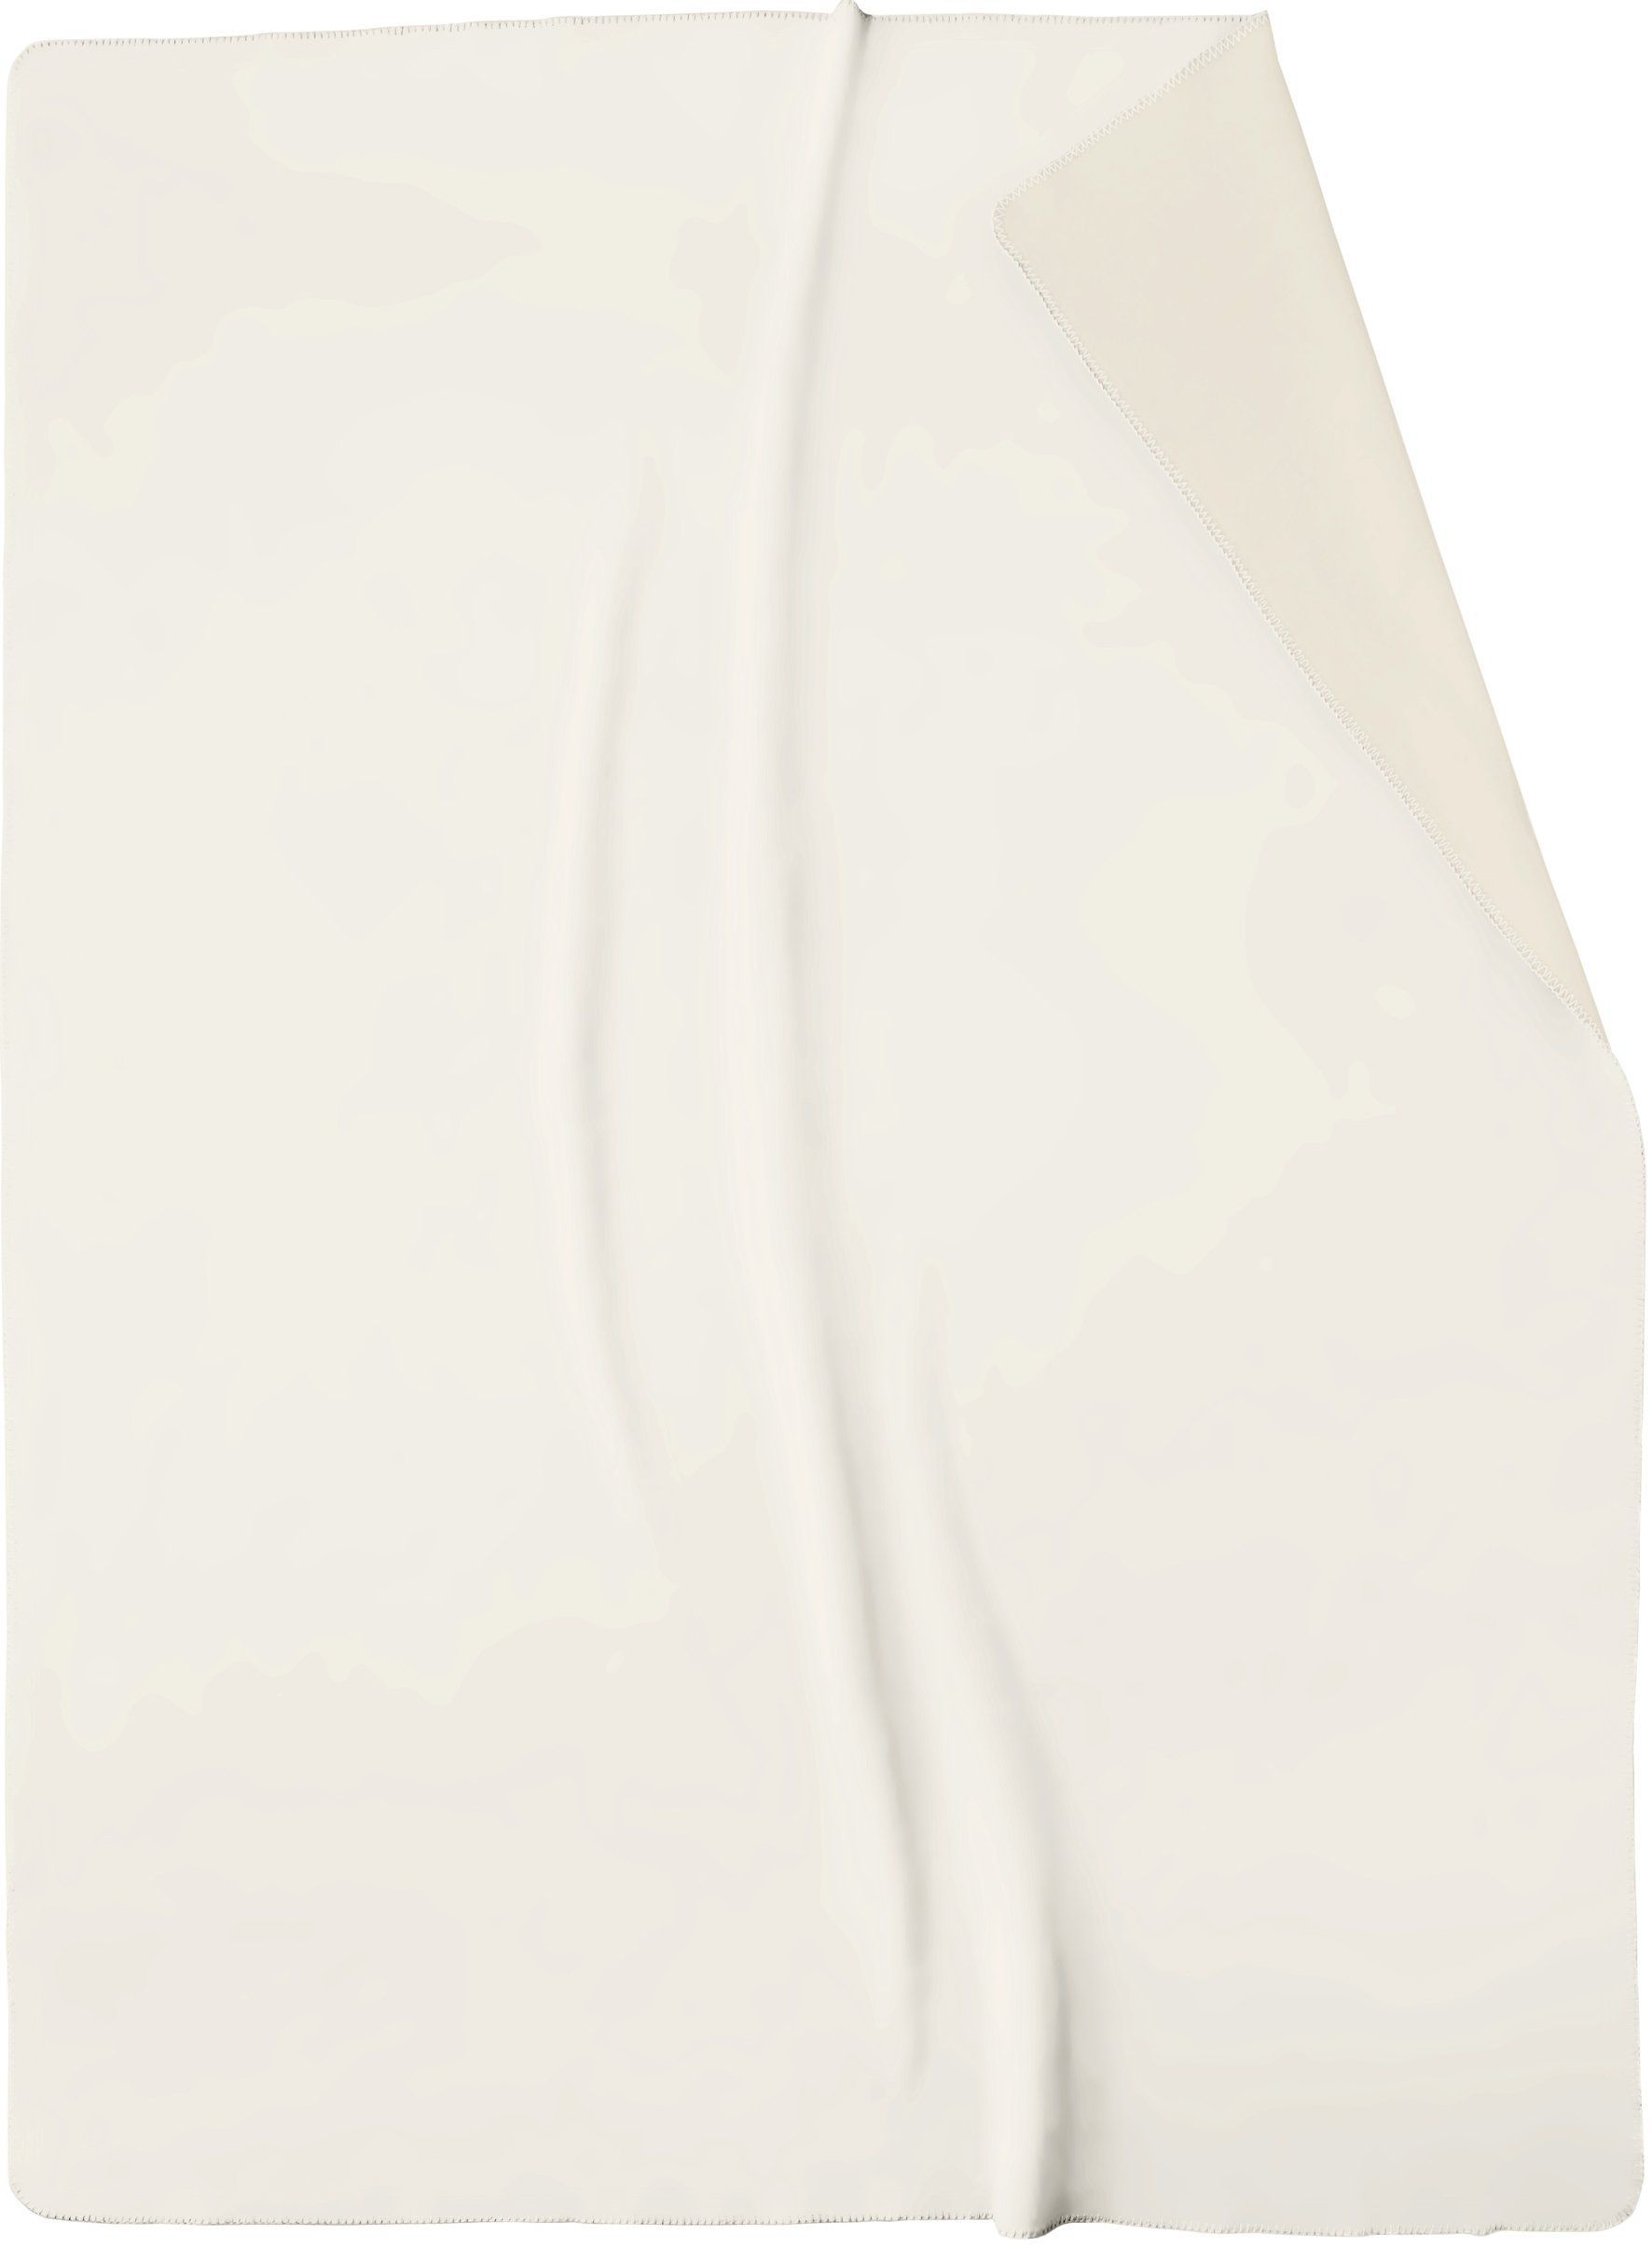 Schlichte Wohndecke "Duo Cotton" aus Baumwollmischgewebe in 150x200 cm in Ecru-Feder - Freisteller